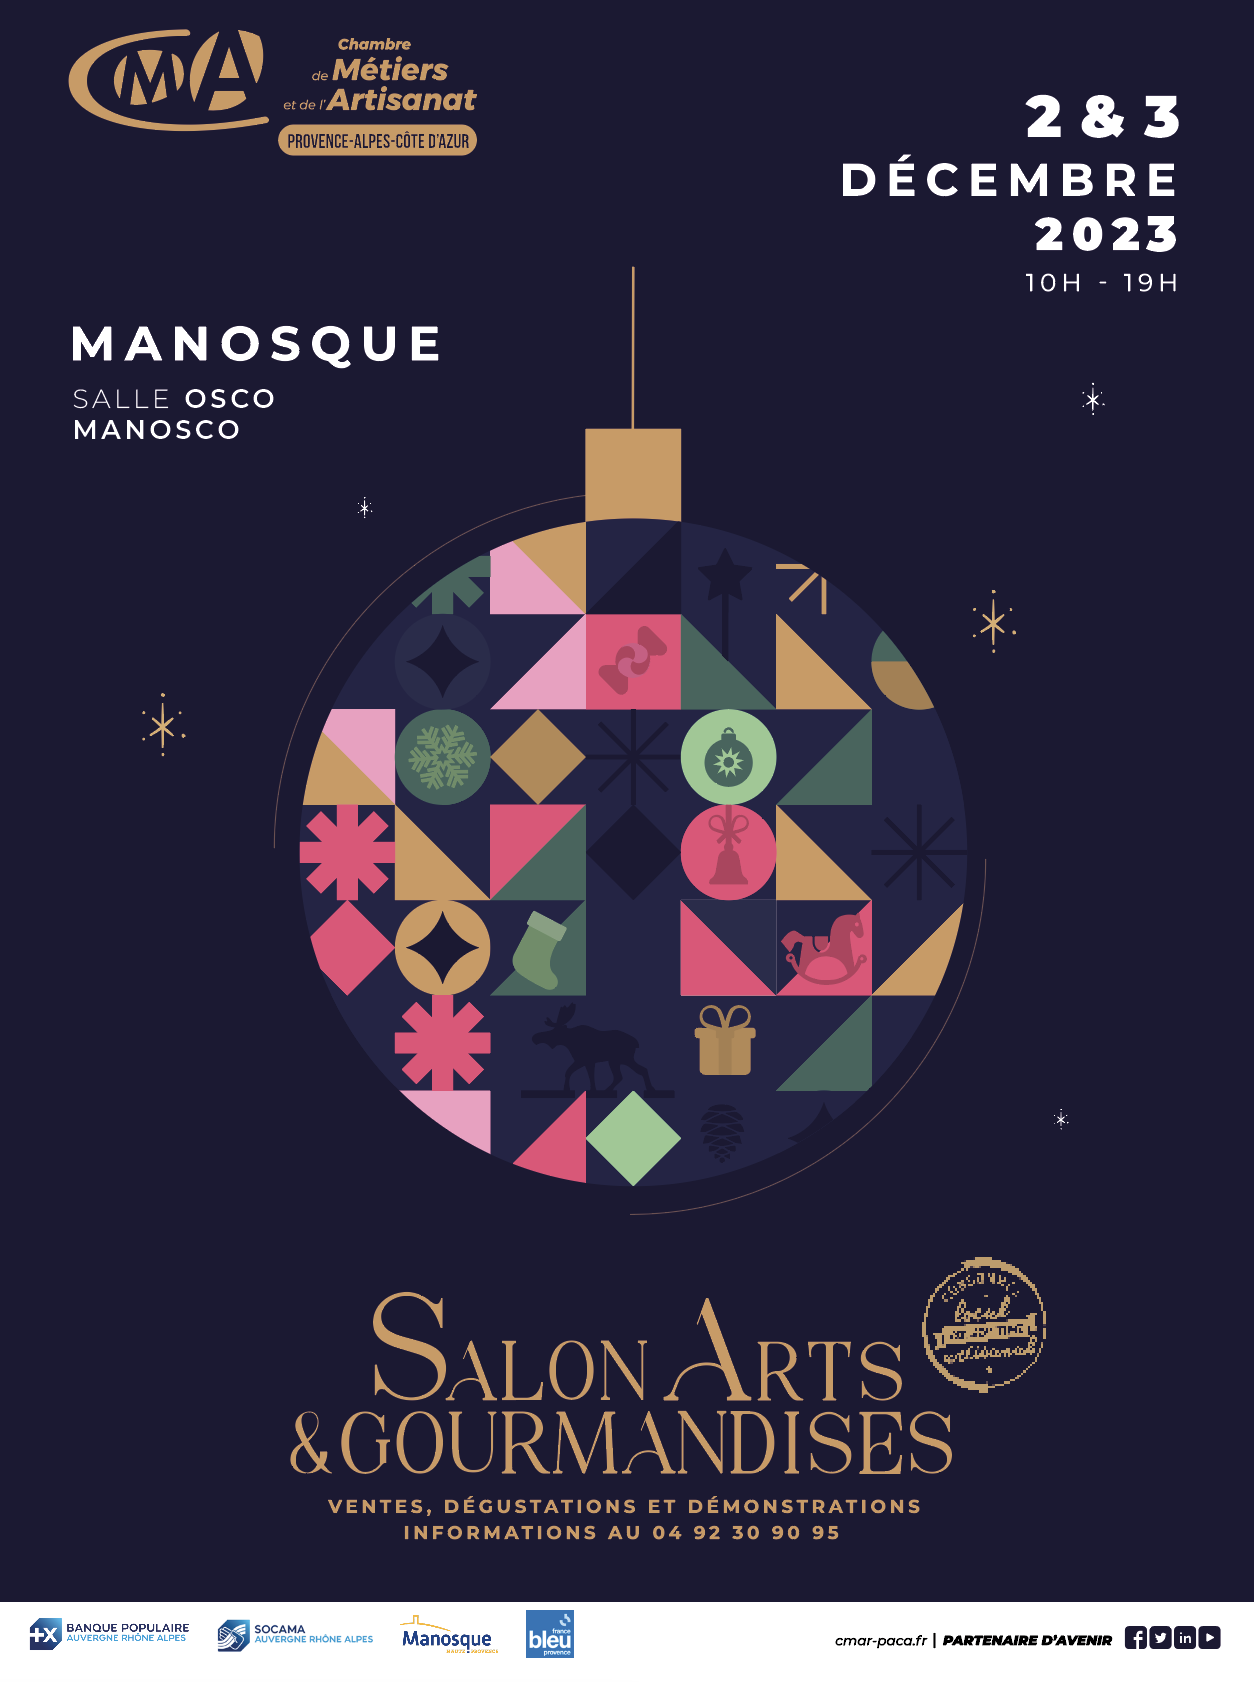 Le Salon Arts et Gourmandises se tiendra les 2 et 3 décembre dans la salle Osco Manosco